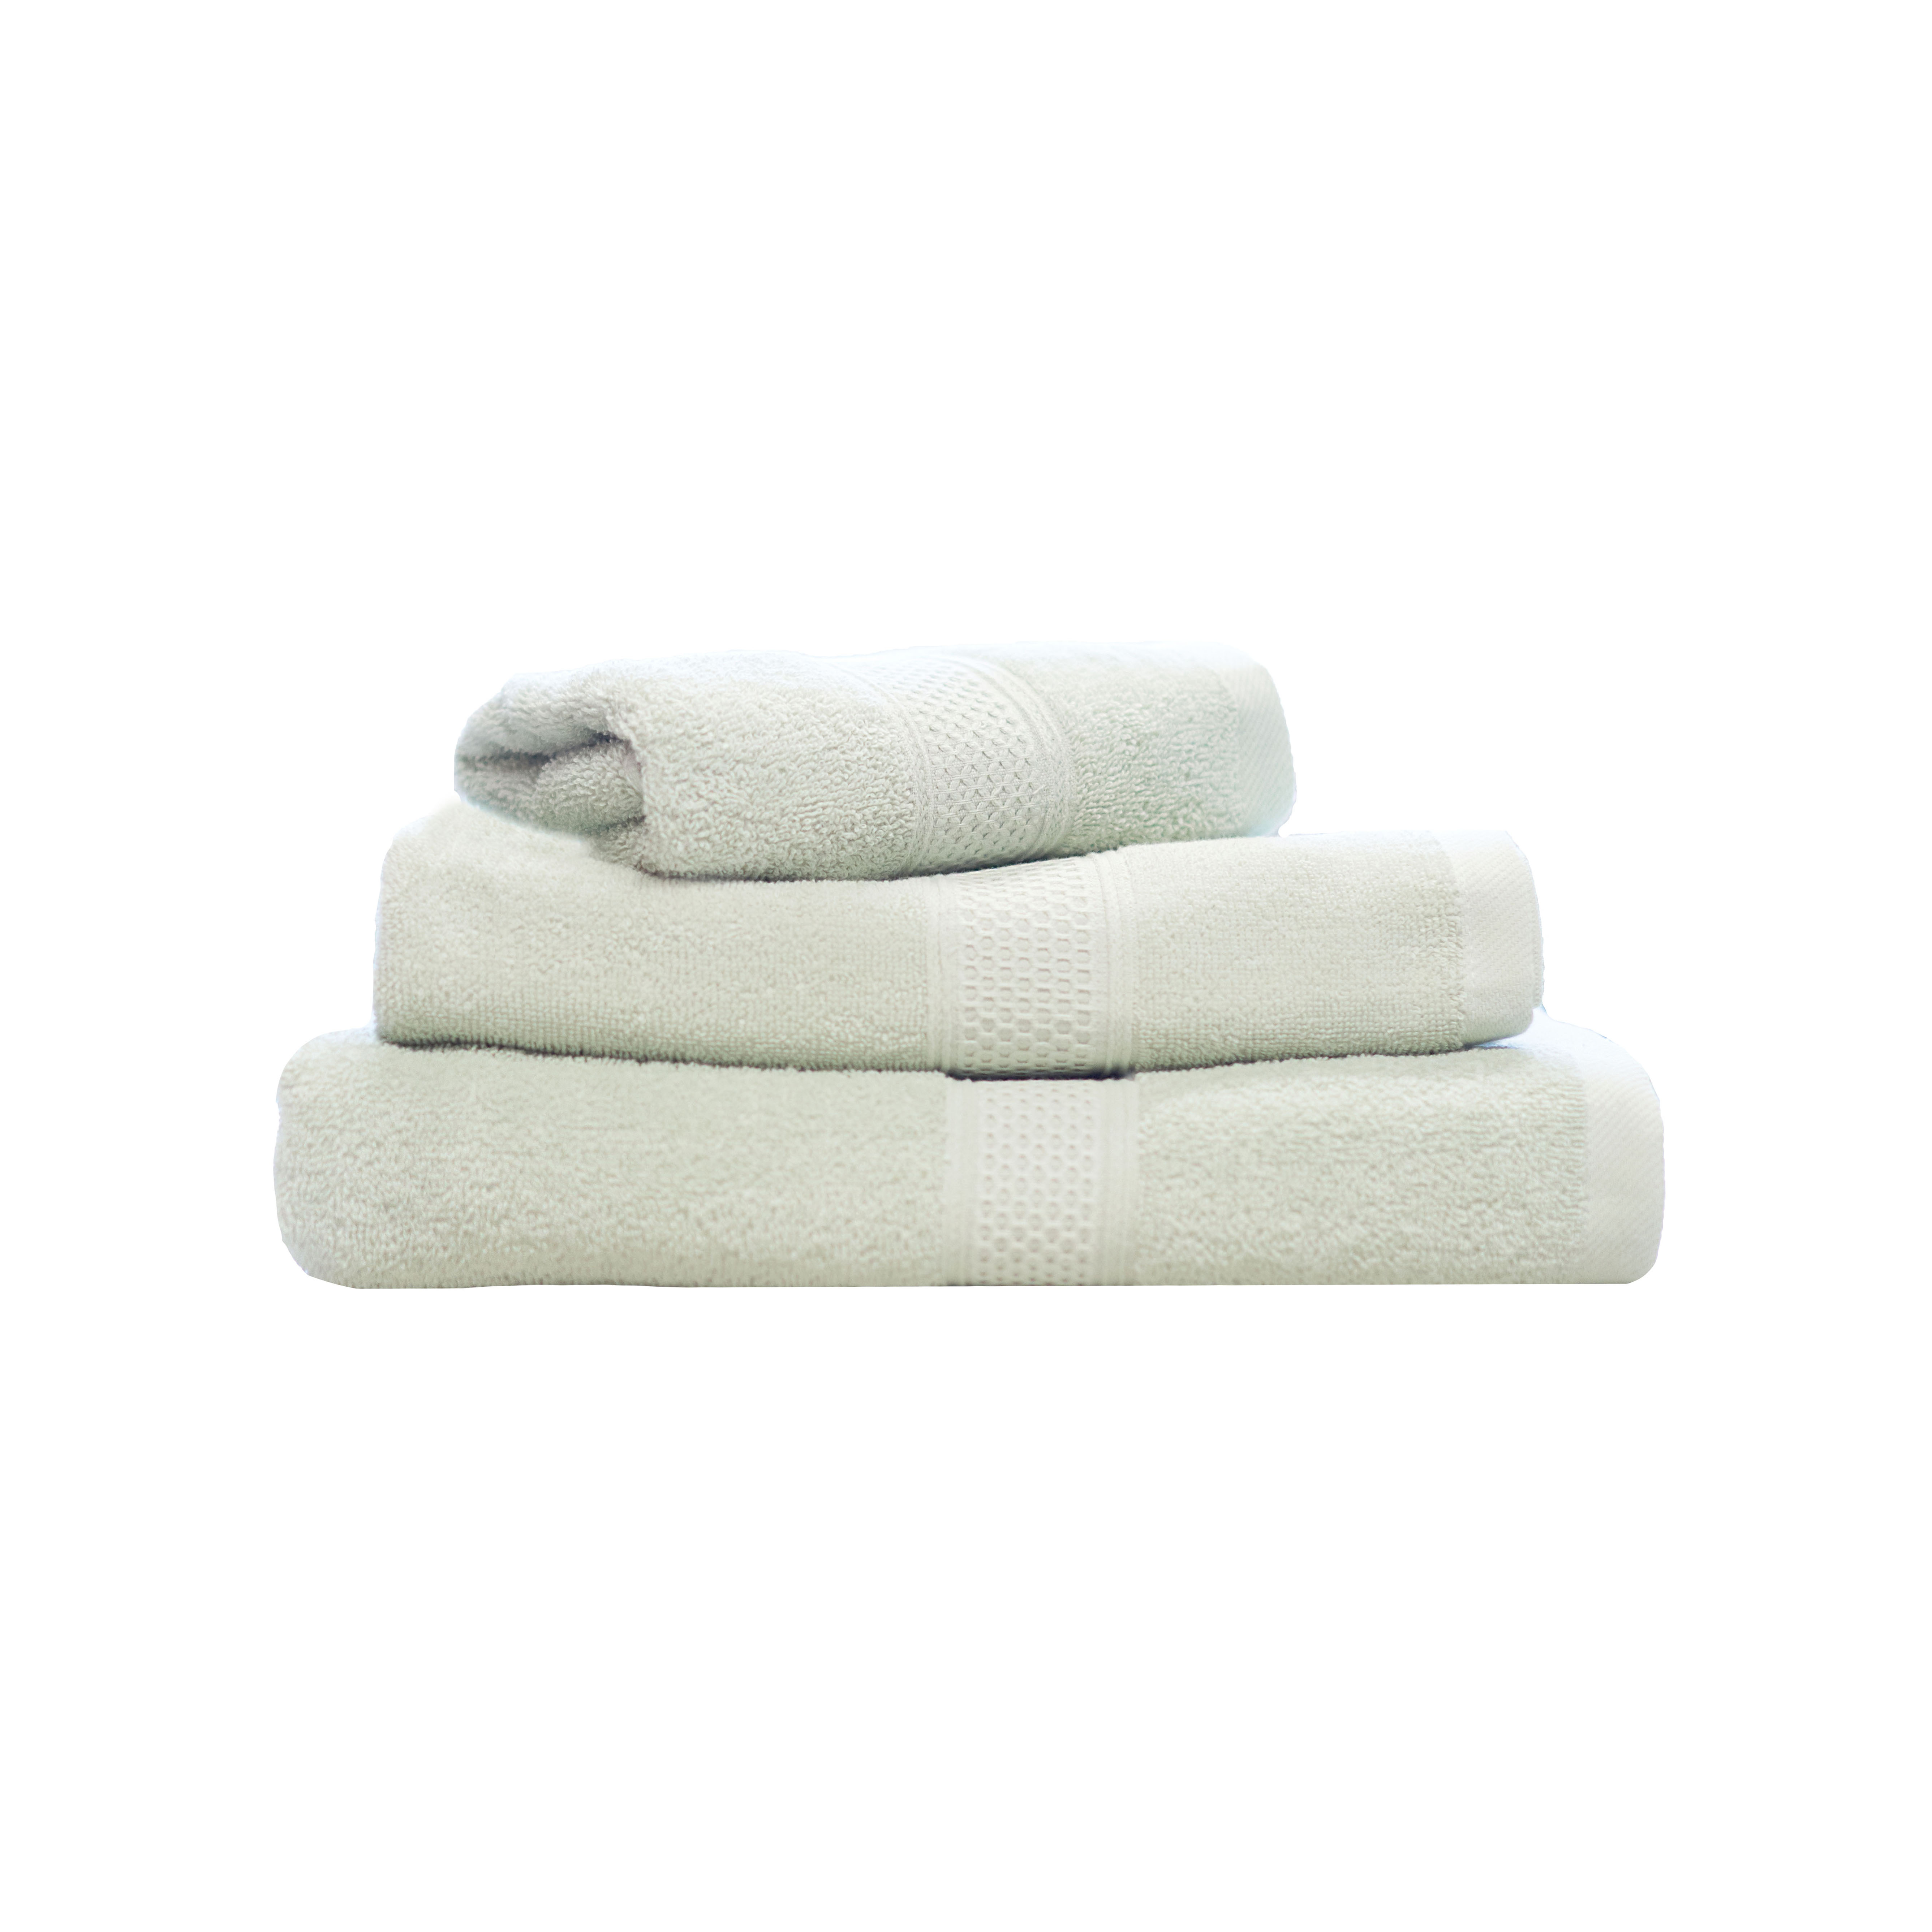 Atma set of Towels 3 pcs, Green